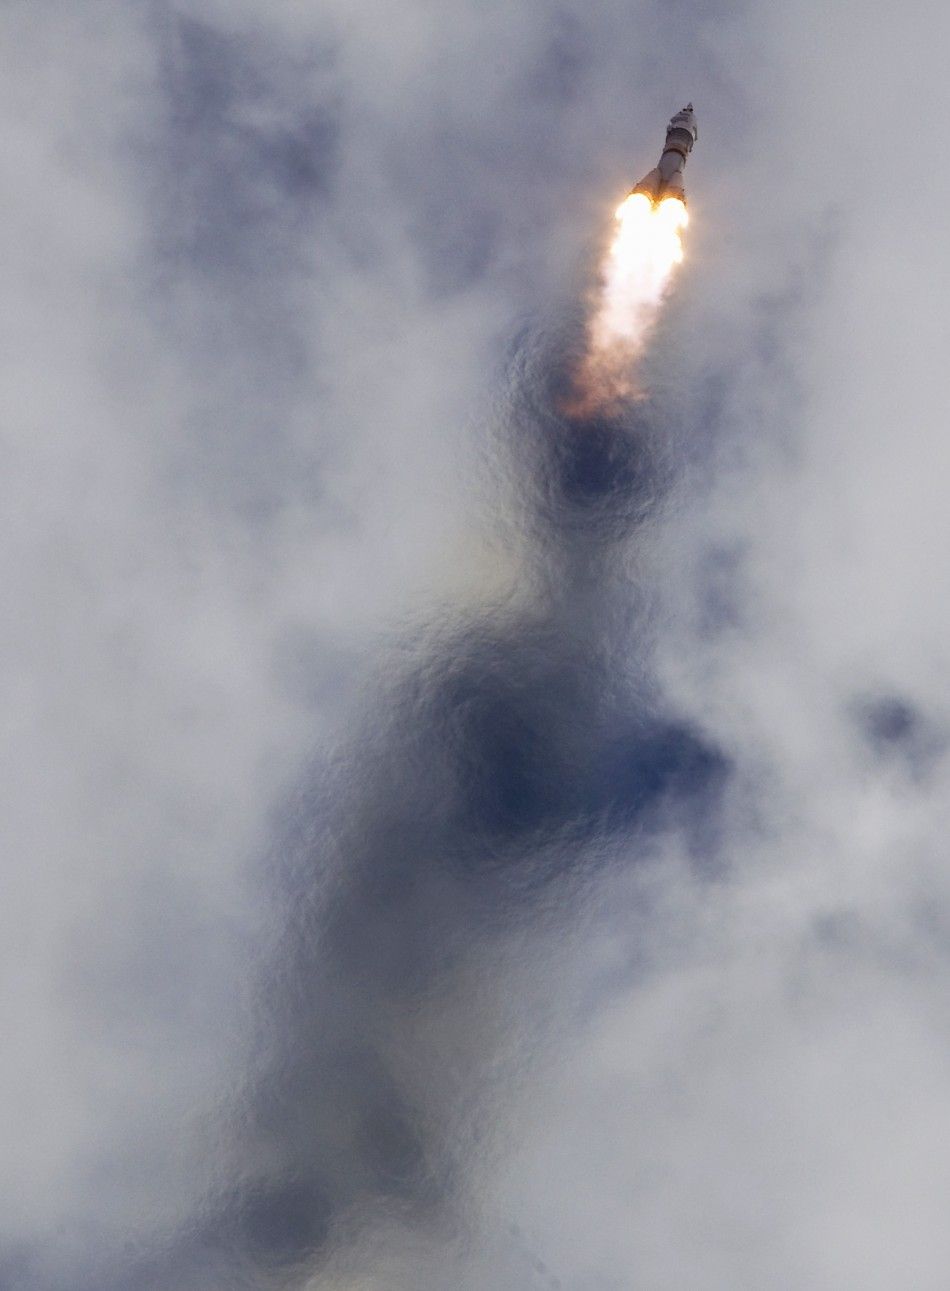 Soyuz TMA-05M